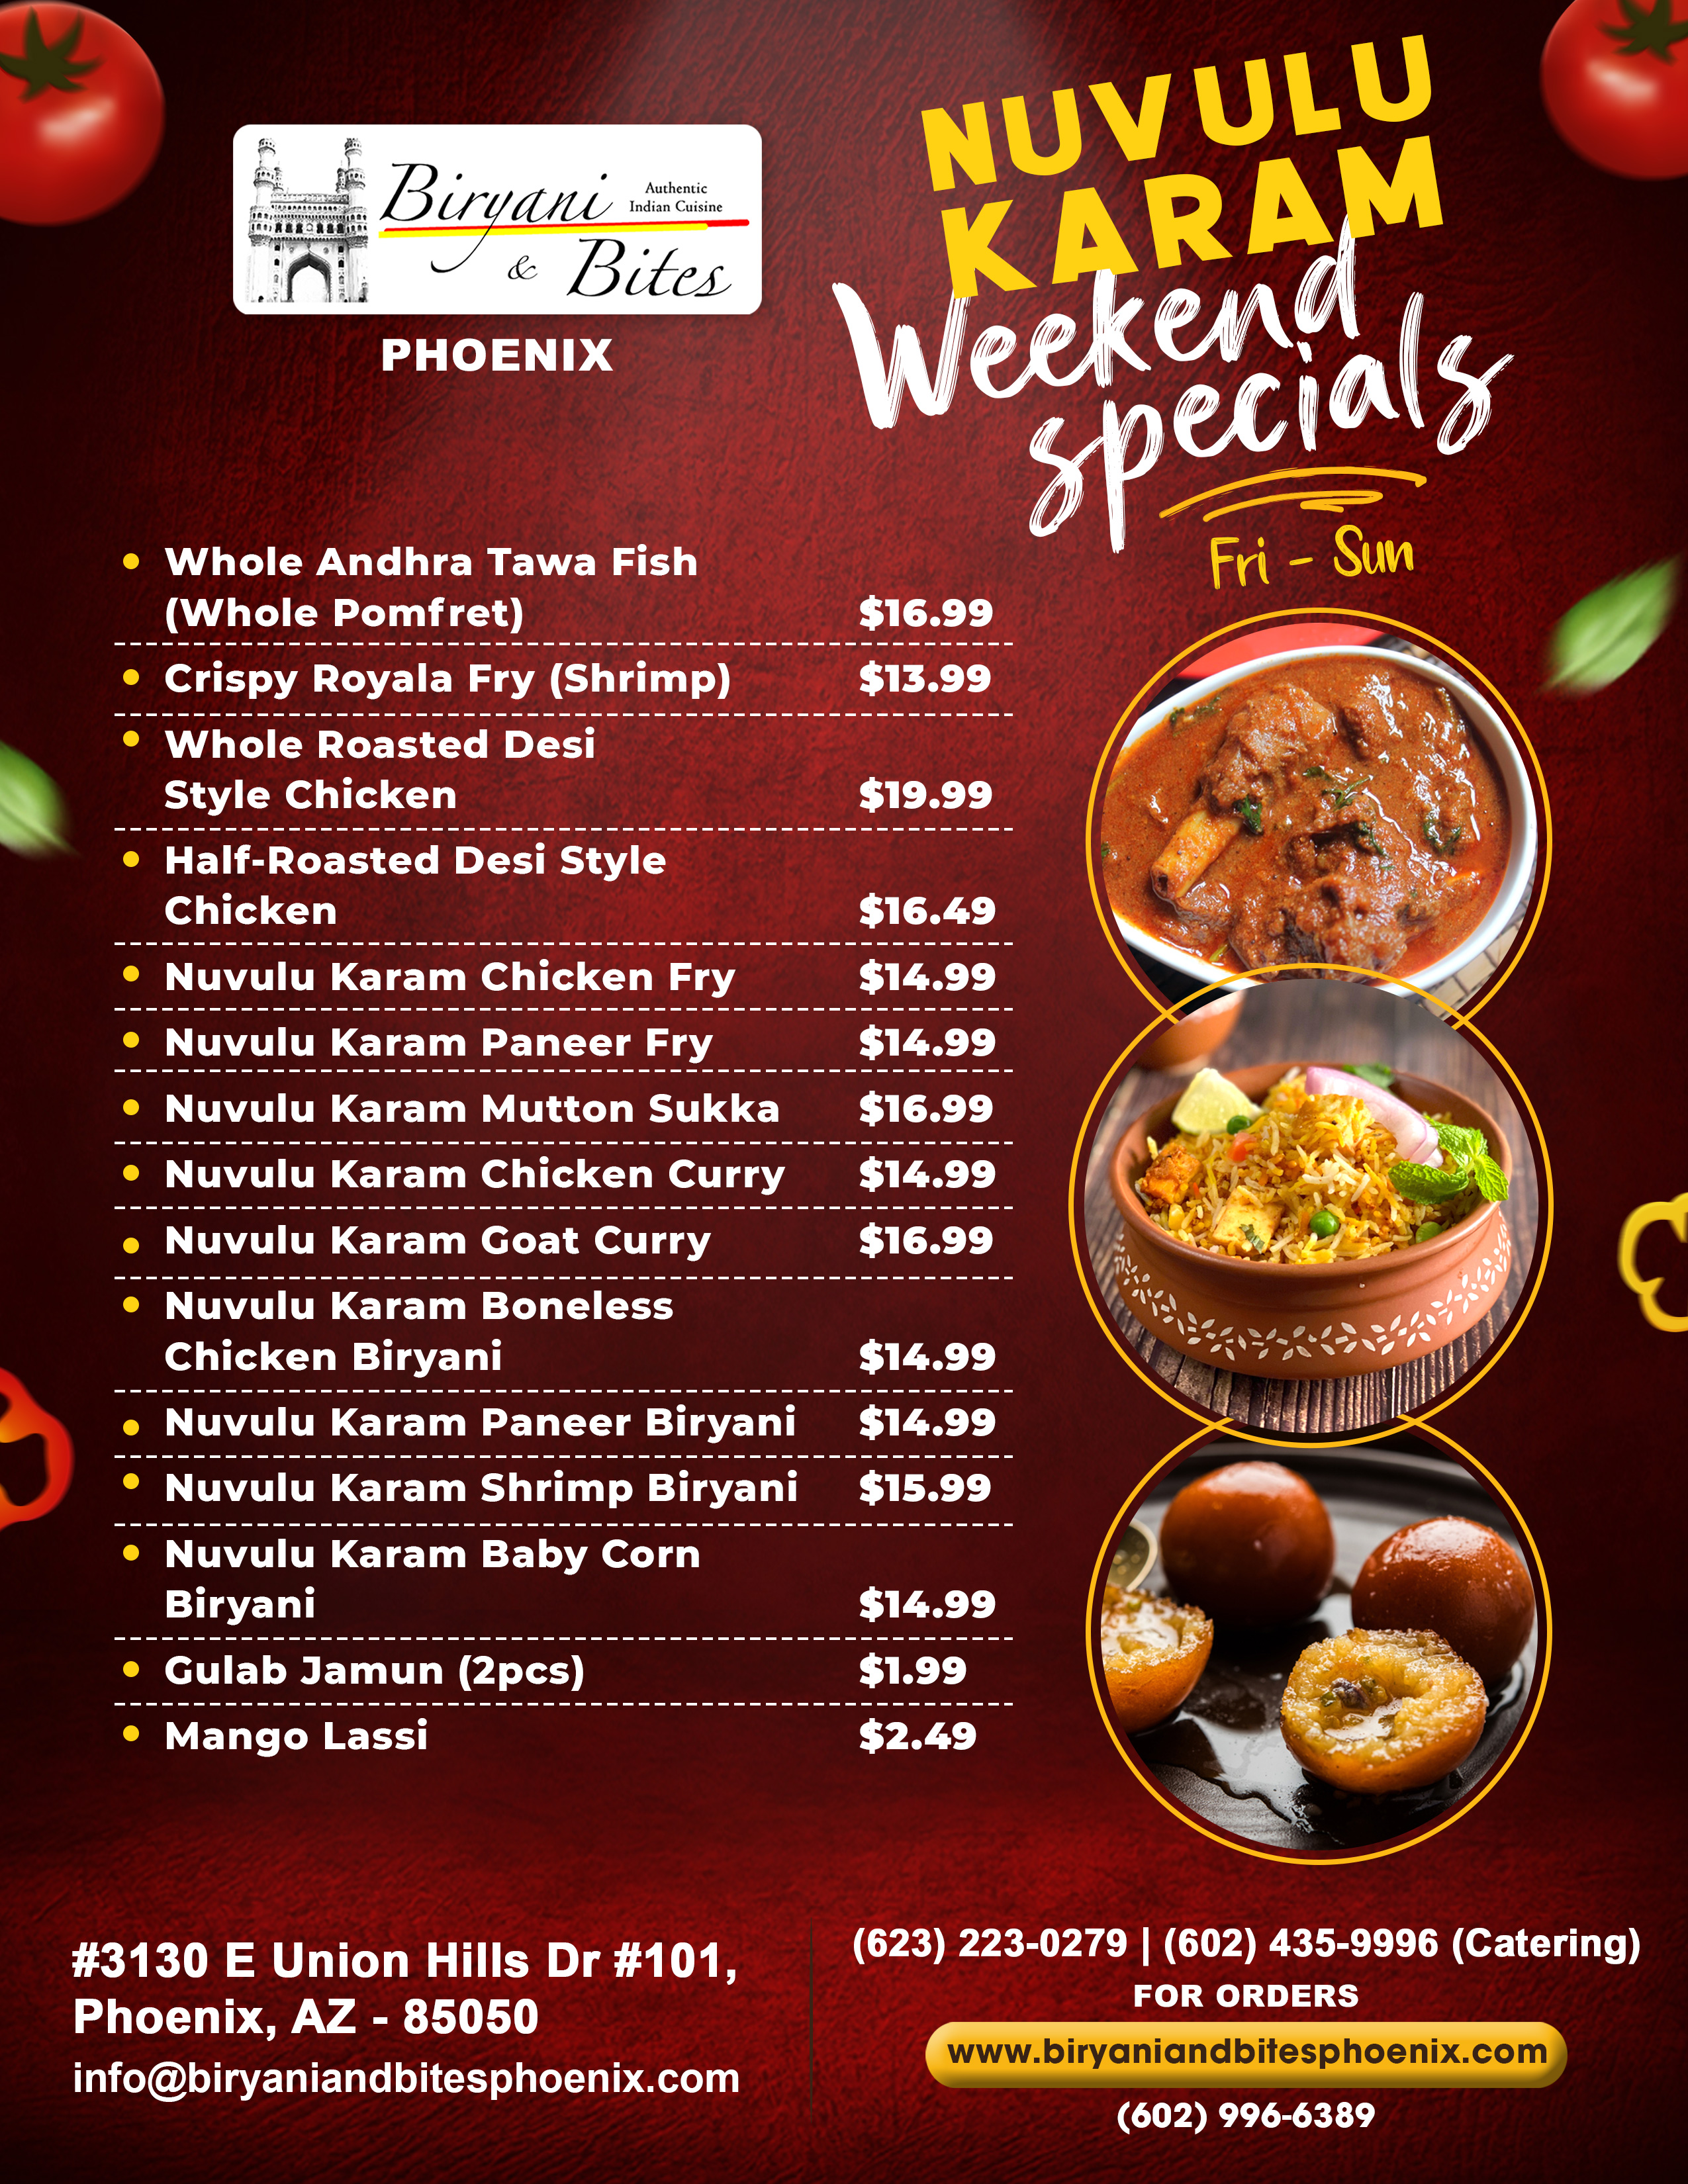 Nuvulu Karam Weekend Specials